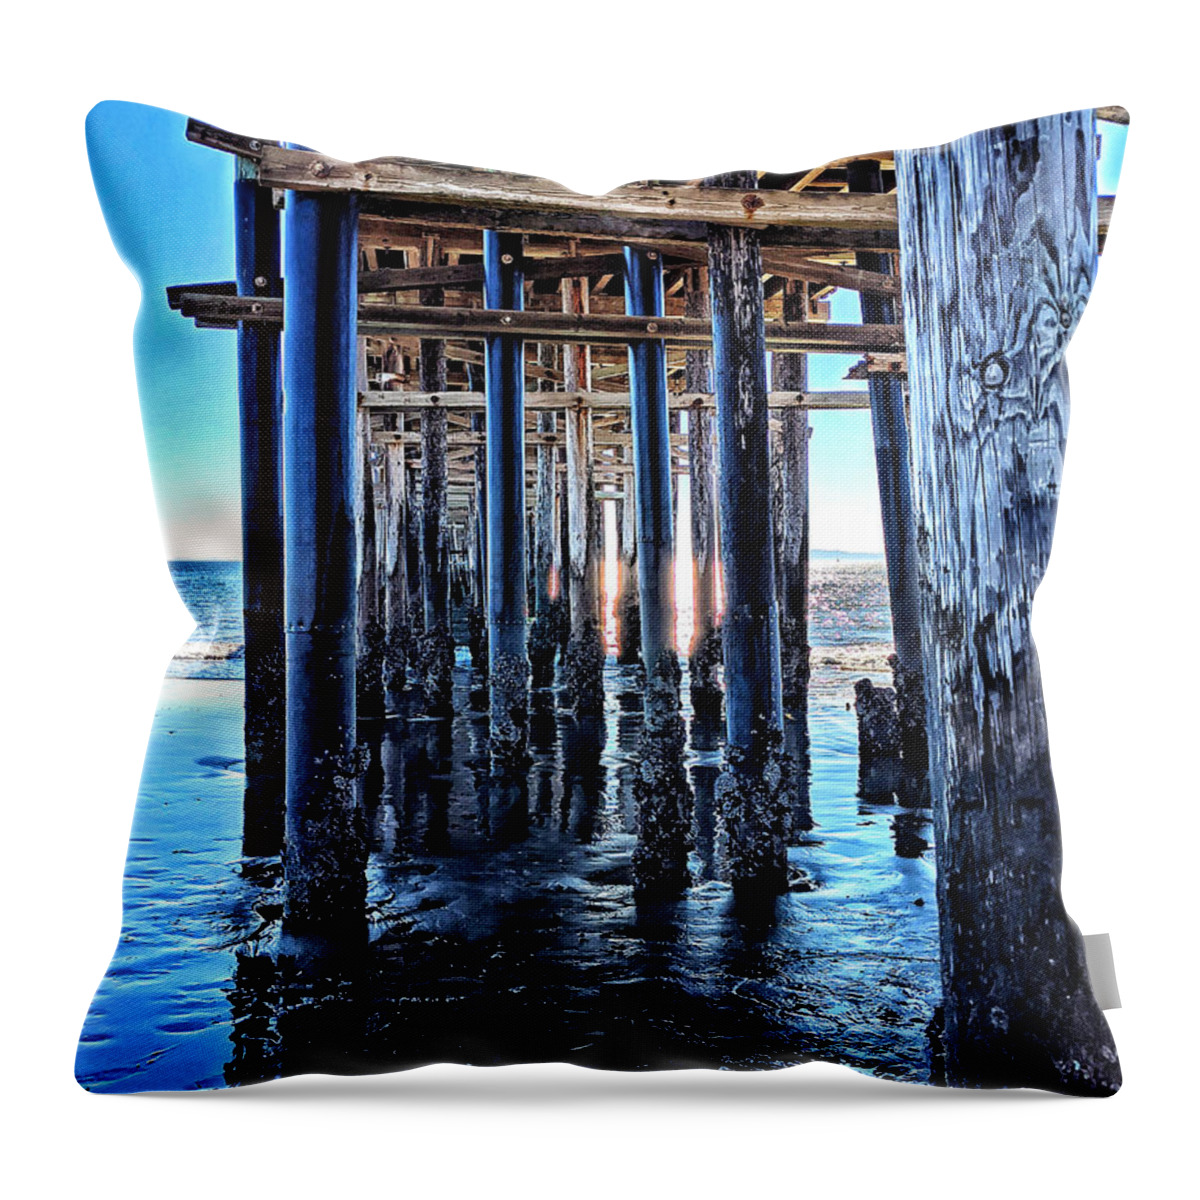 Pier Throw Pillow featuring the photograph California Pier by David Zumsteg